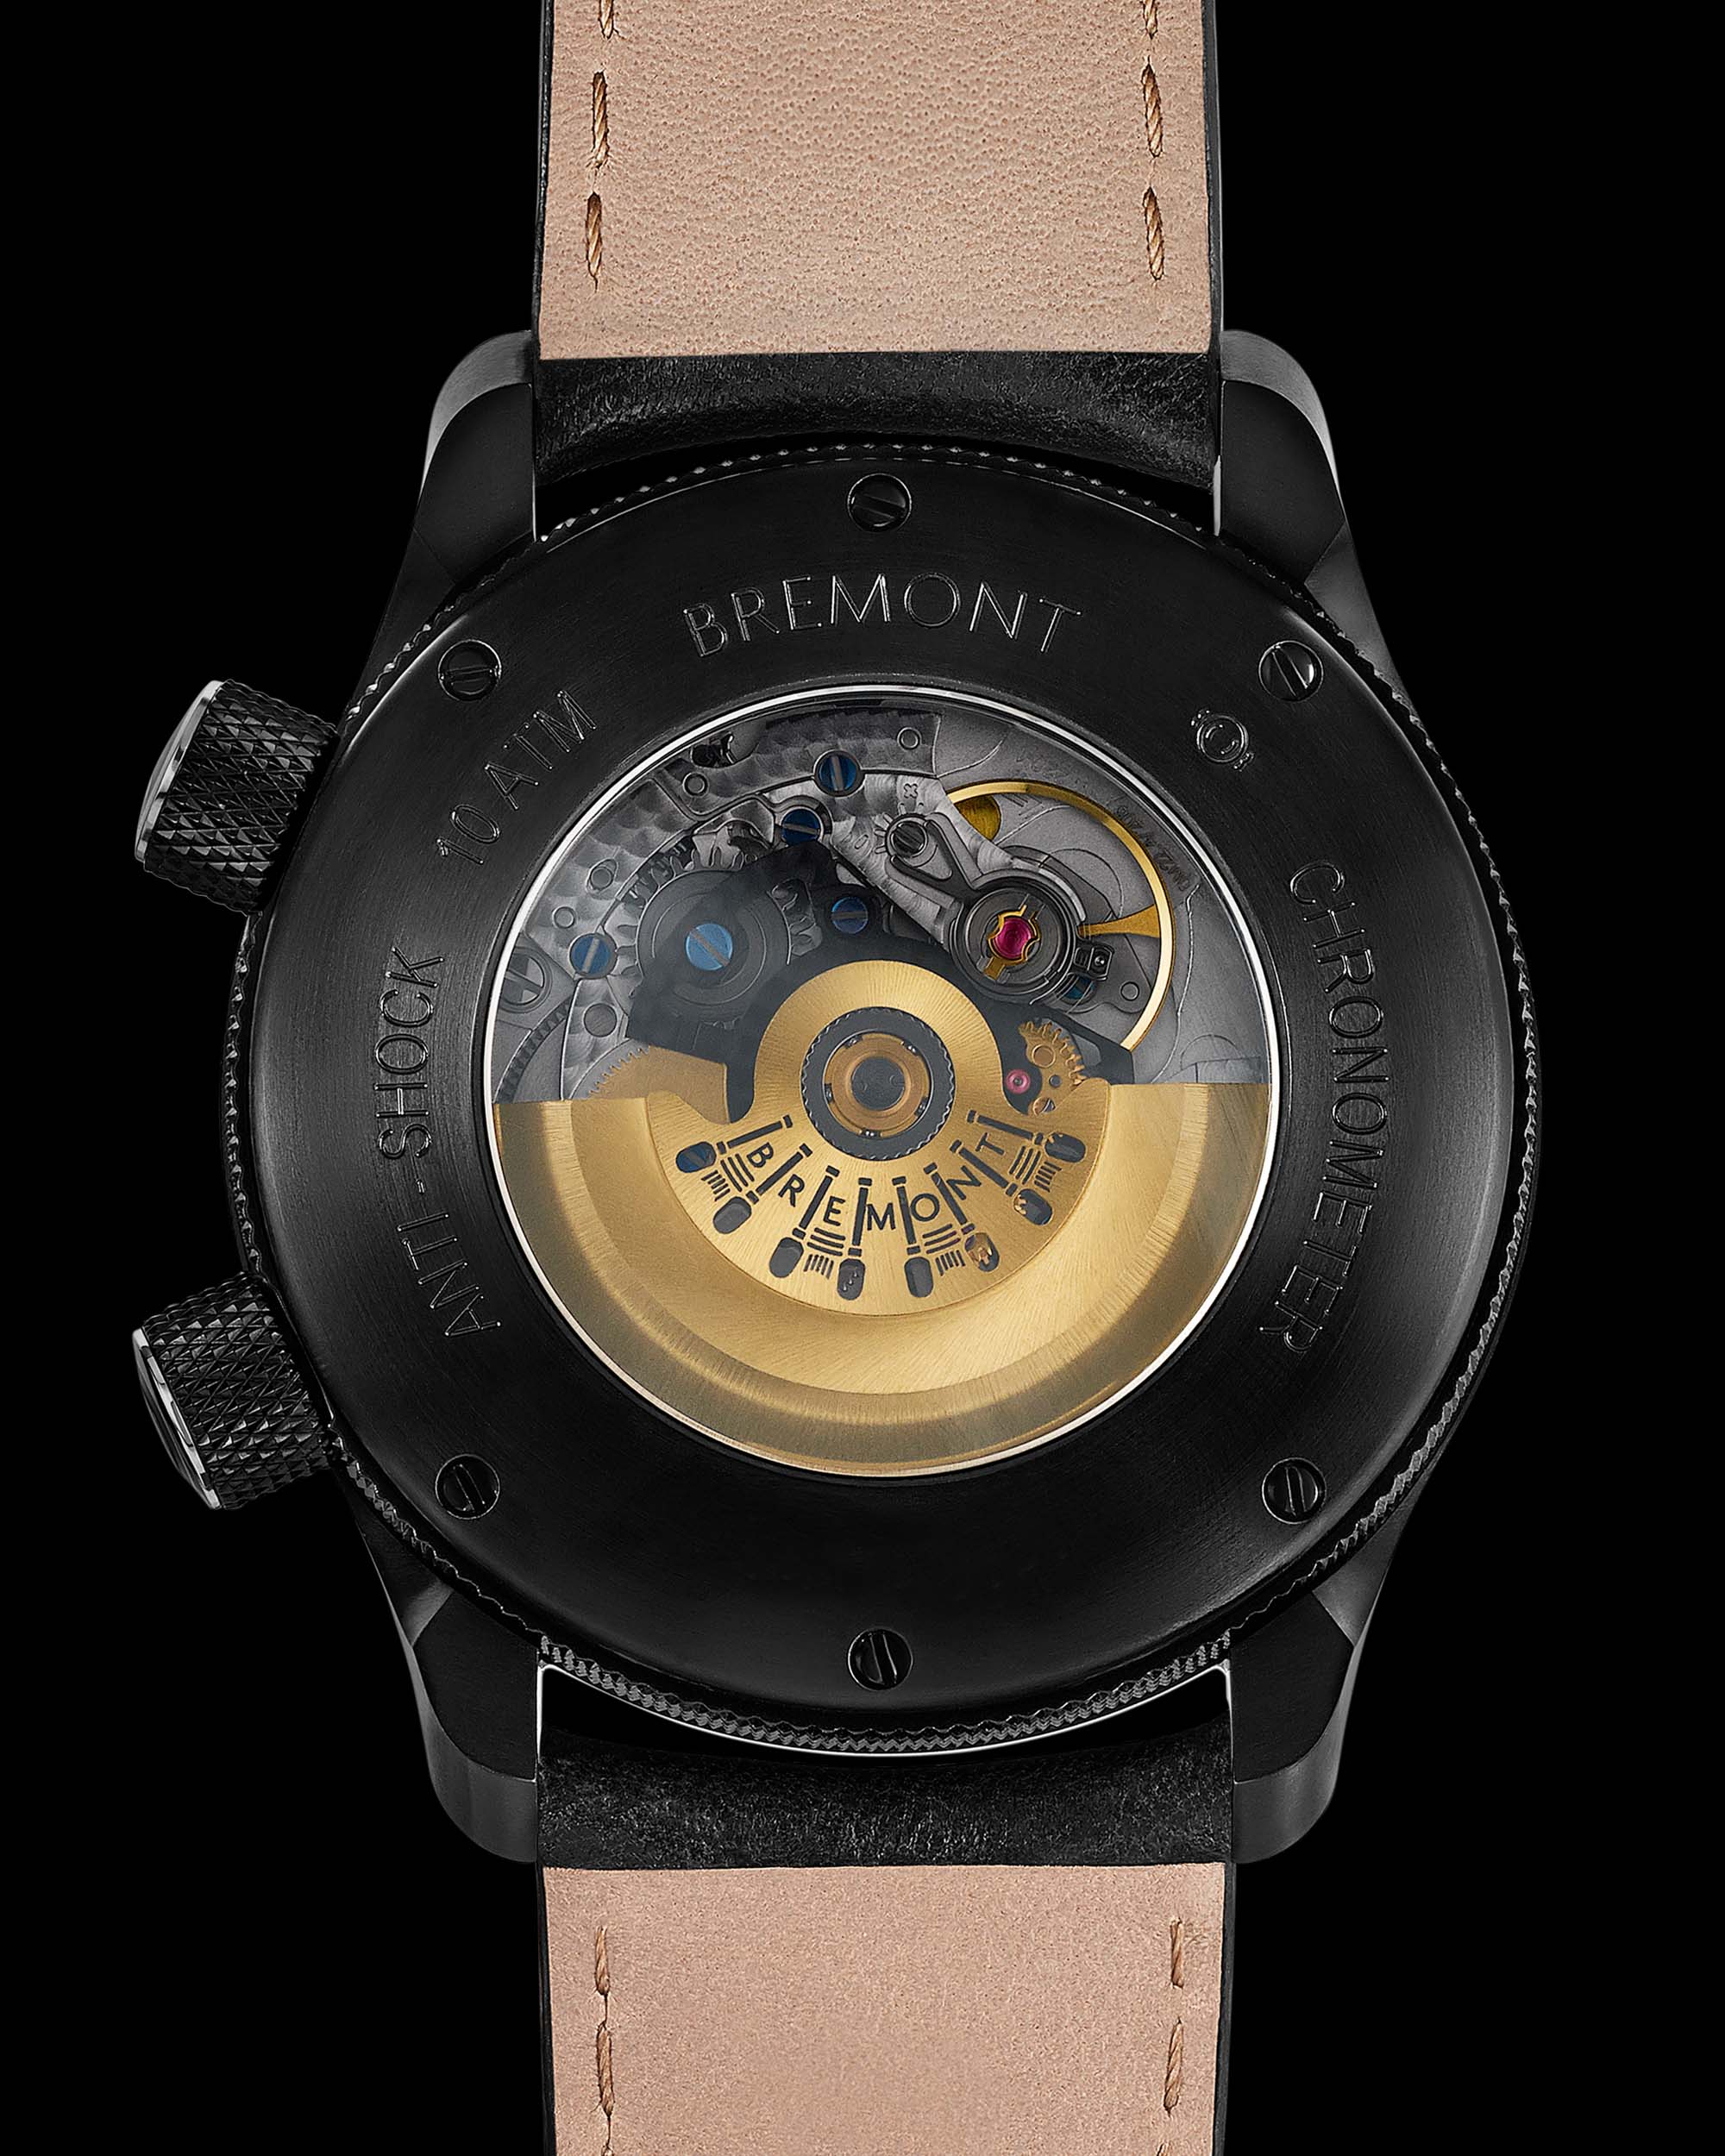 Лимитированная коллекция часов Bremont Argylle в партнерстве с фильмом "Аргайл"